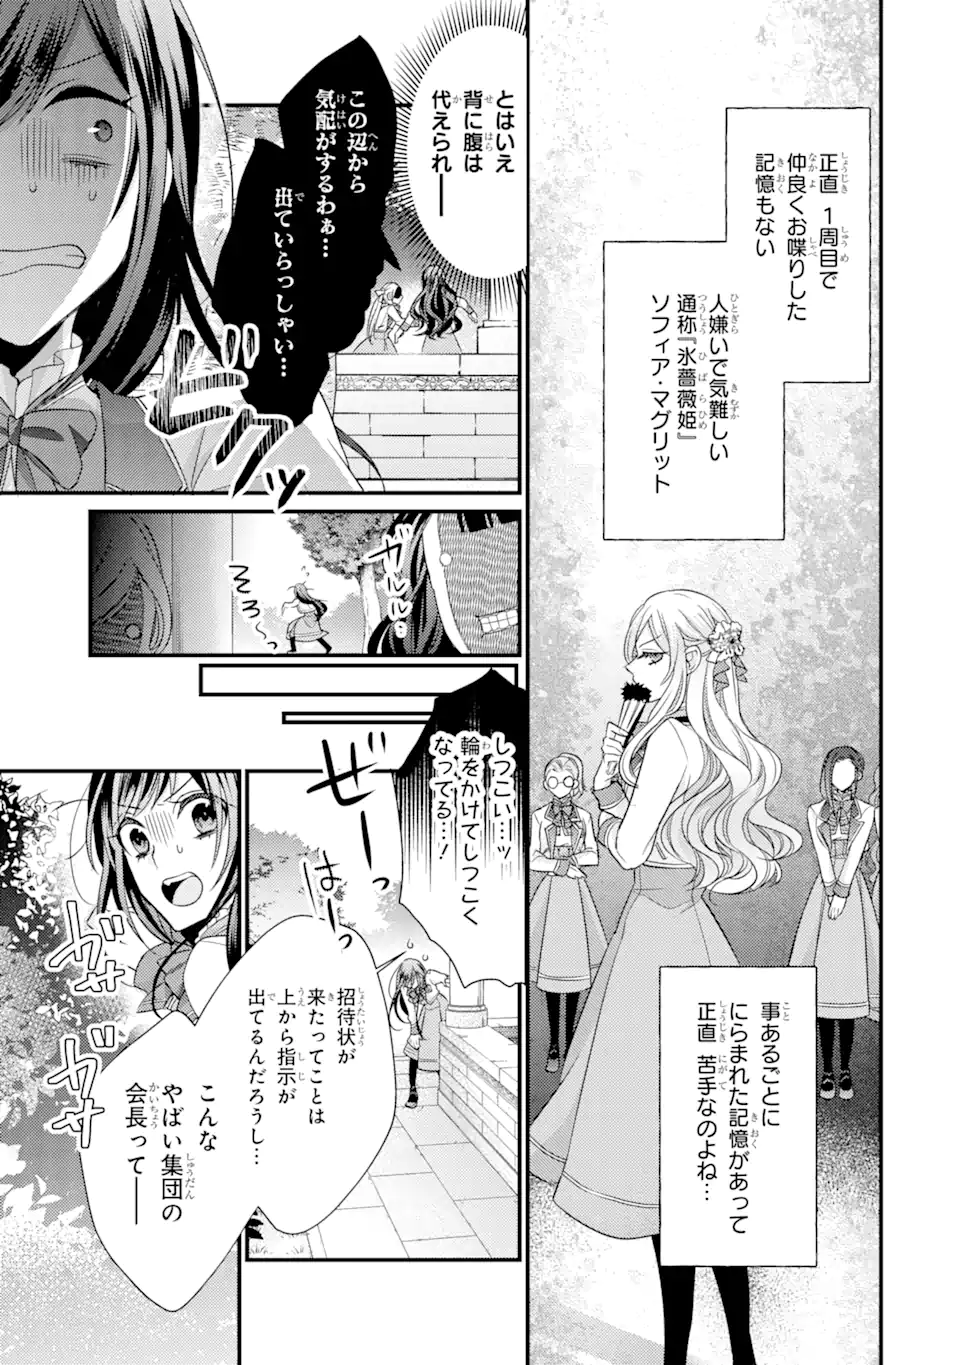 Kekkon suru Shinde Shimau no de, Kanst Seijo (Lv. 99) wa Meshi Tero Shimasu! - Chapter 6.1 - Page 5